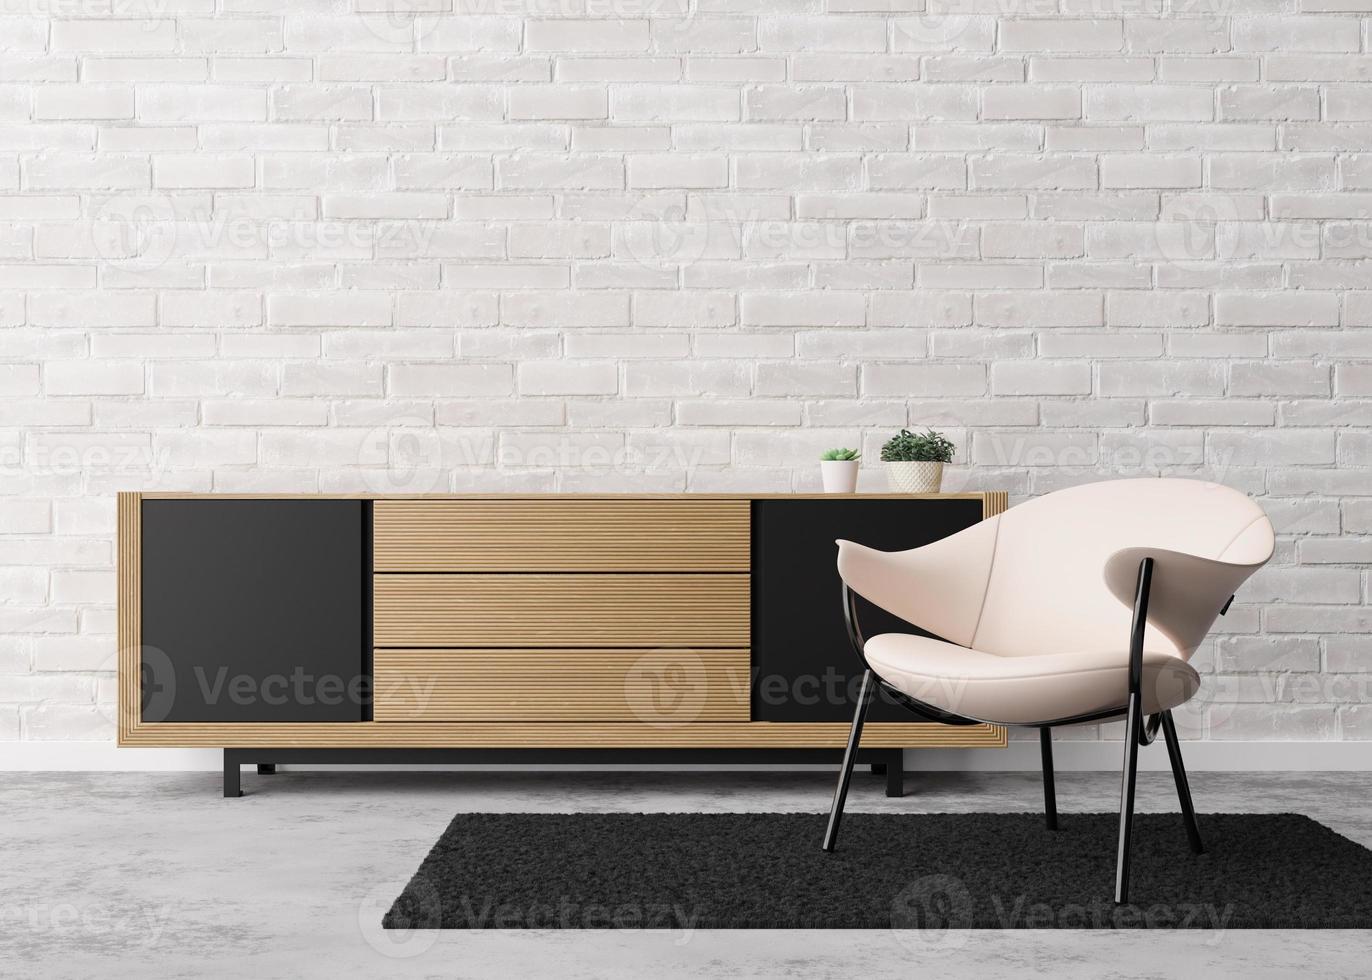 parede de tijolo branco vazia na moderna sala de estar. mock up interior em estilo contemporâneo. espaço livre, copie o espaço para sua imagem, texto ou outro design. console, poltrona. renderização 3D. foto